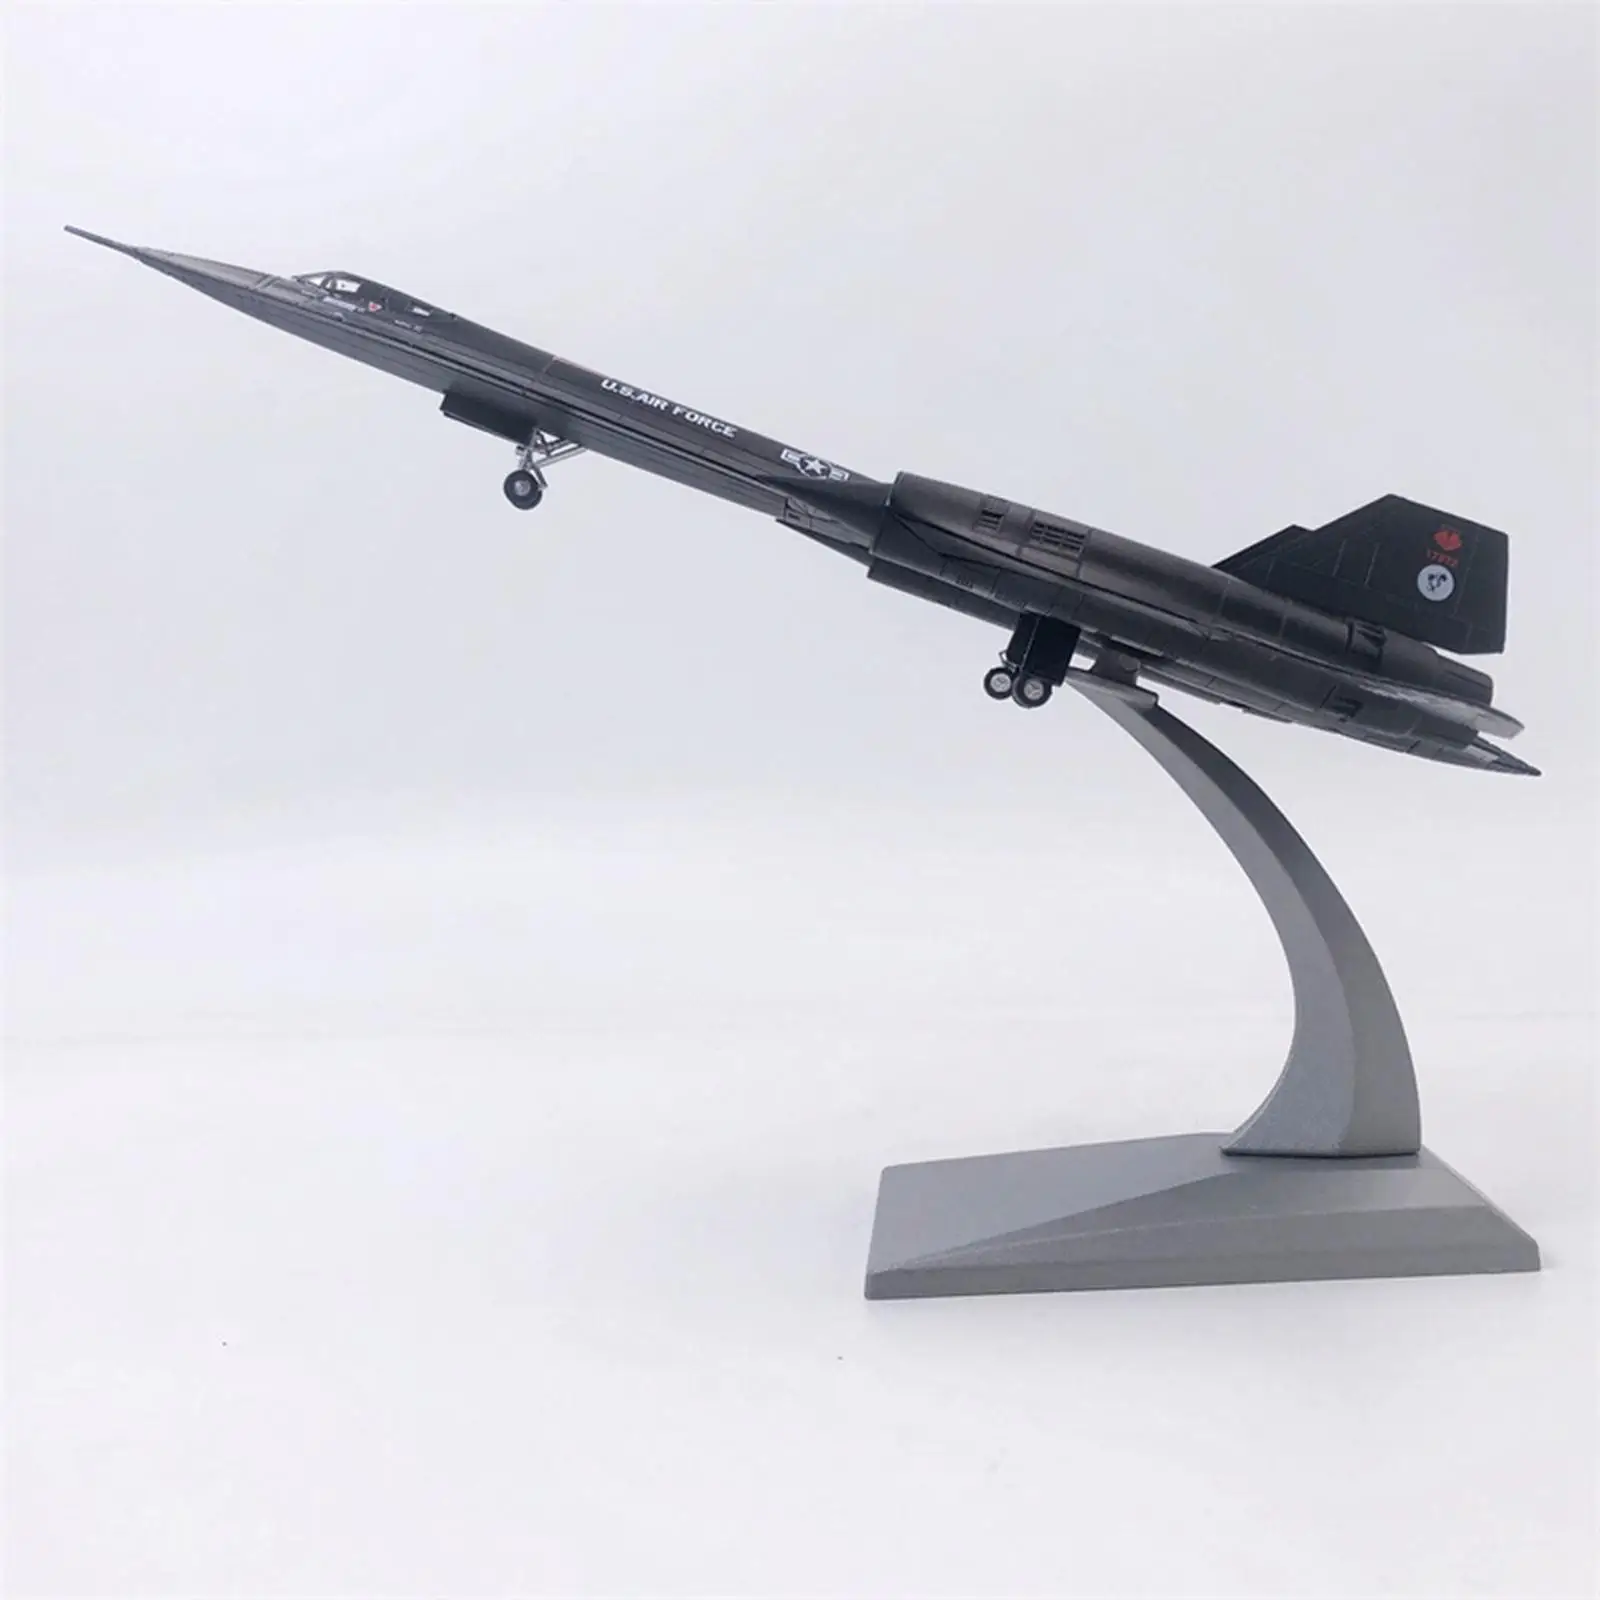 Diecast 1:144 Blackbird  Fighter Model   Plane for Shelf Decor